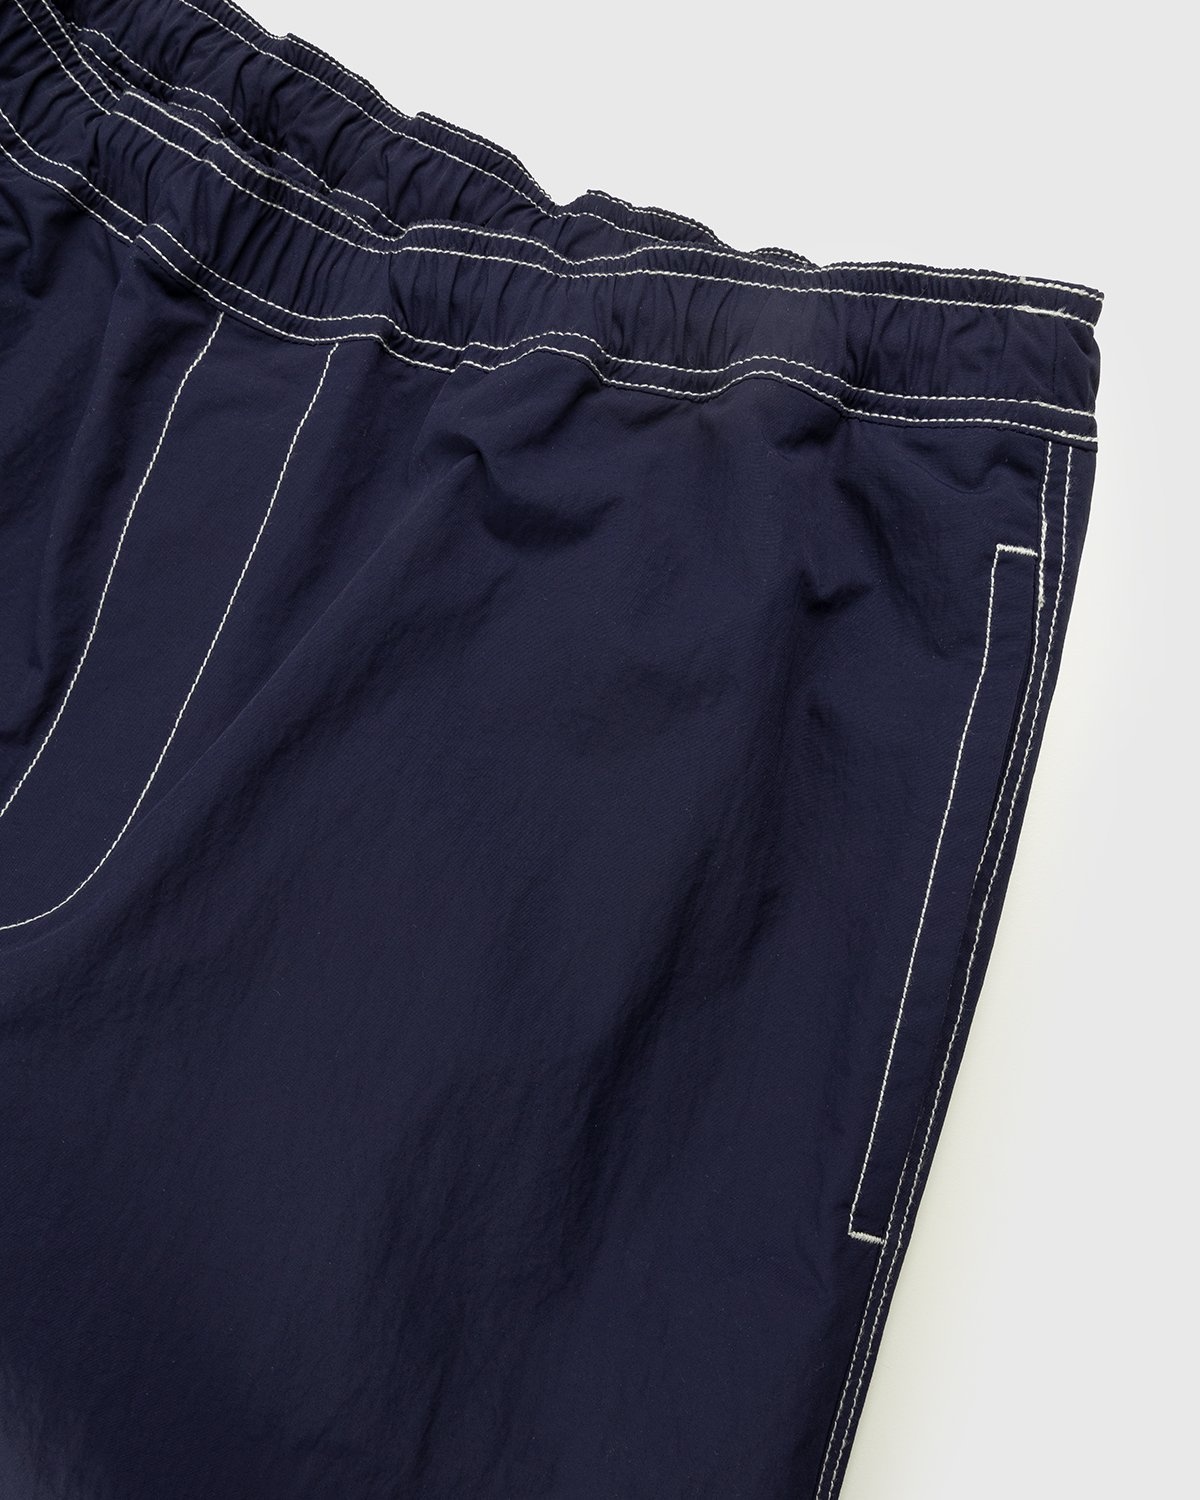 Highsnobiety – Contrast Brushed Nylon Elastic Pants Navy - Pants - Blue - Image 4